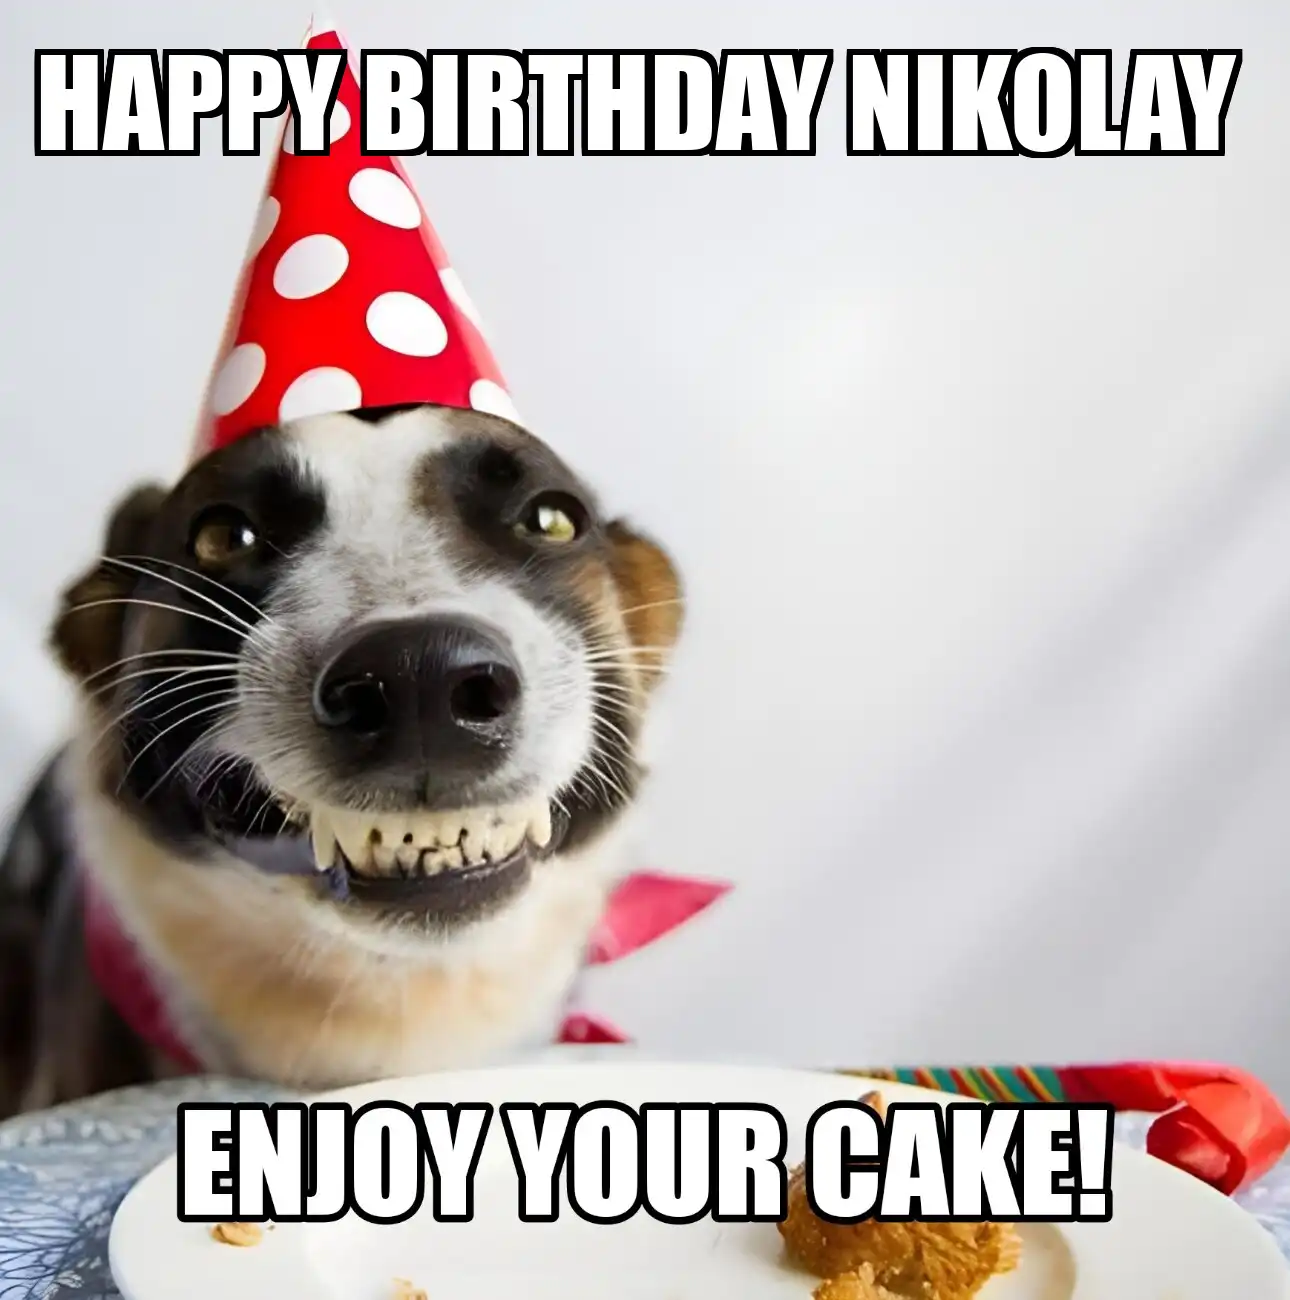 Happy Birthday Nikolay Enjoy Your Cake Dog Meme